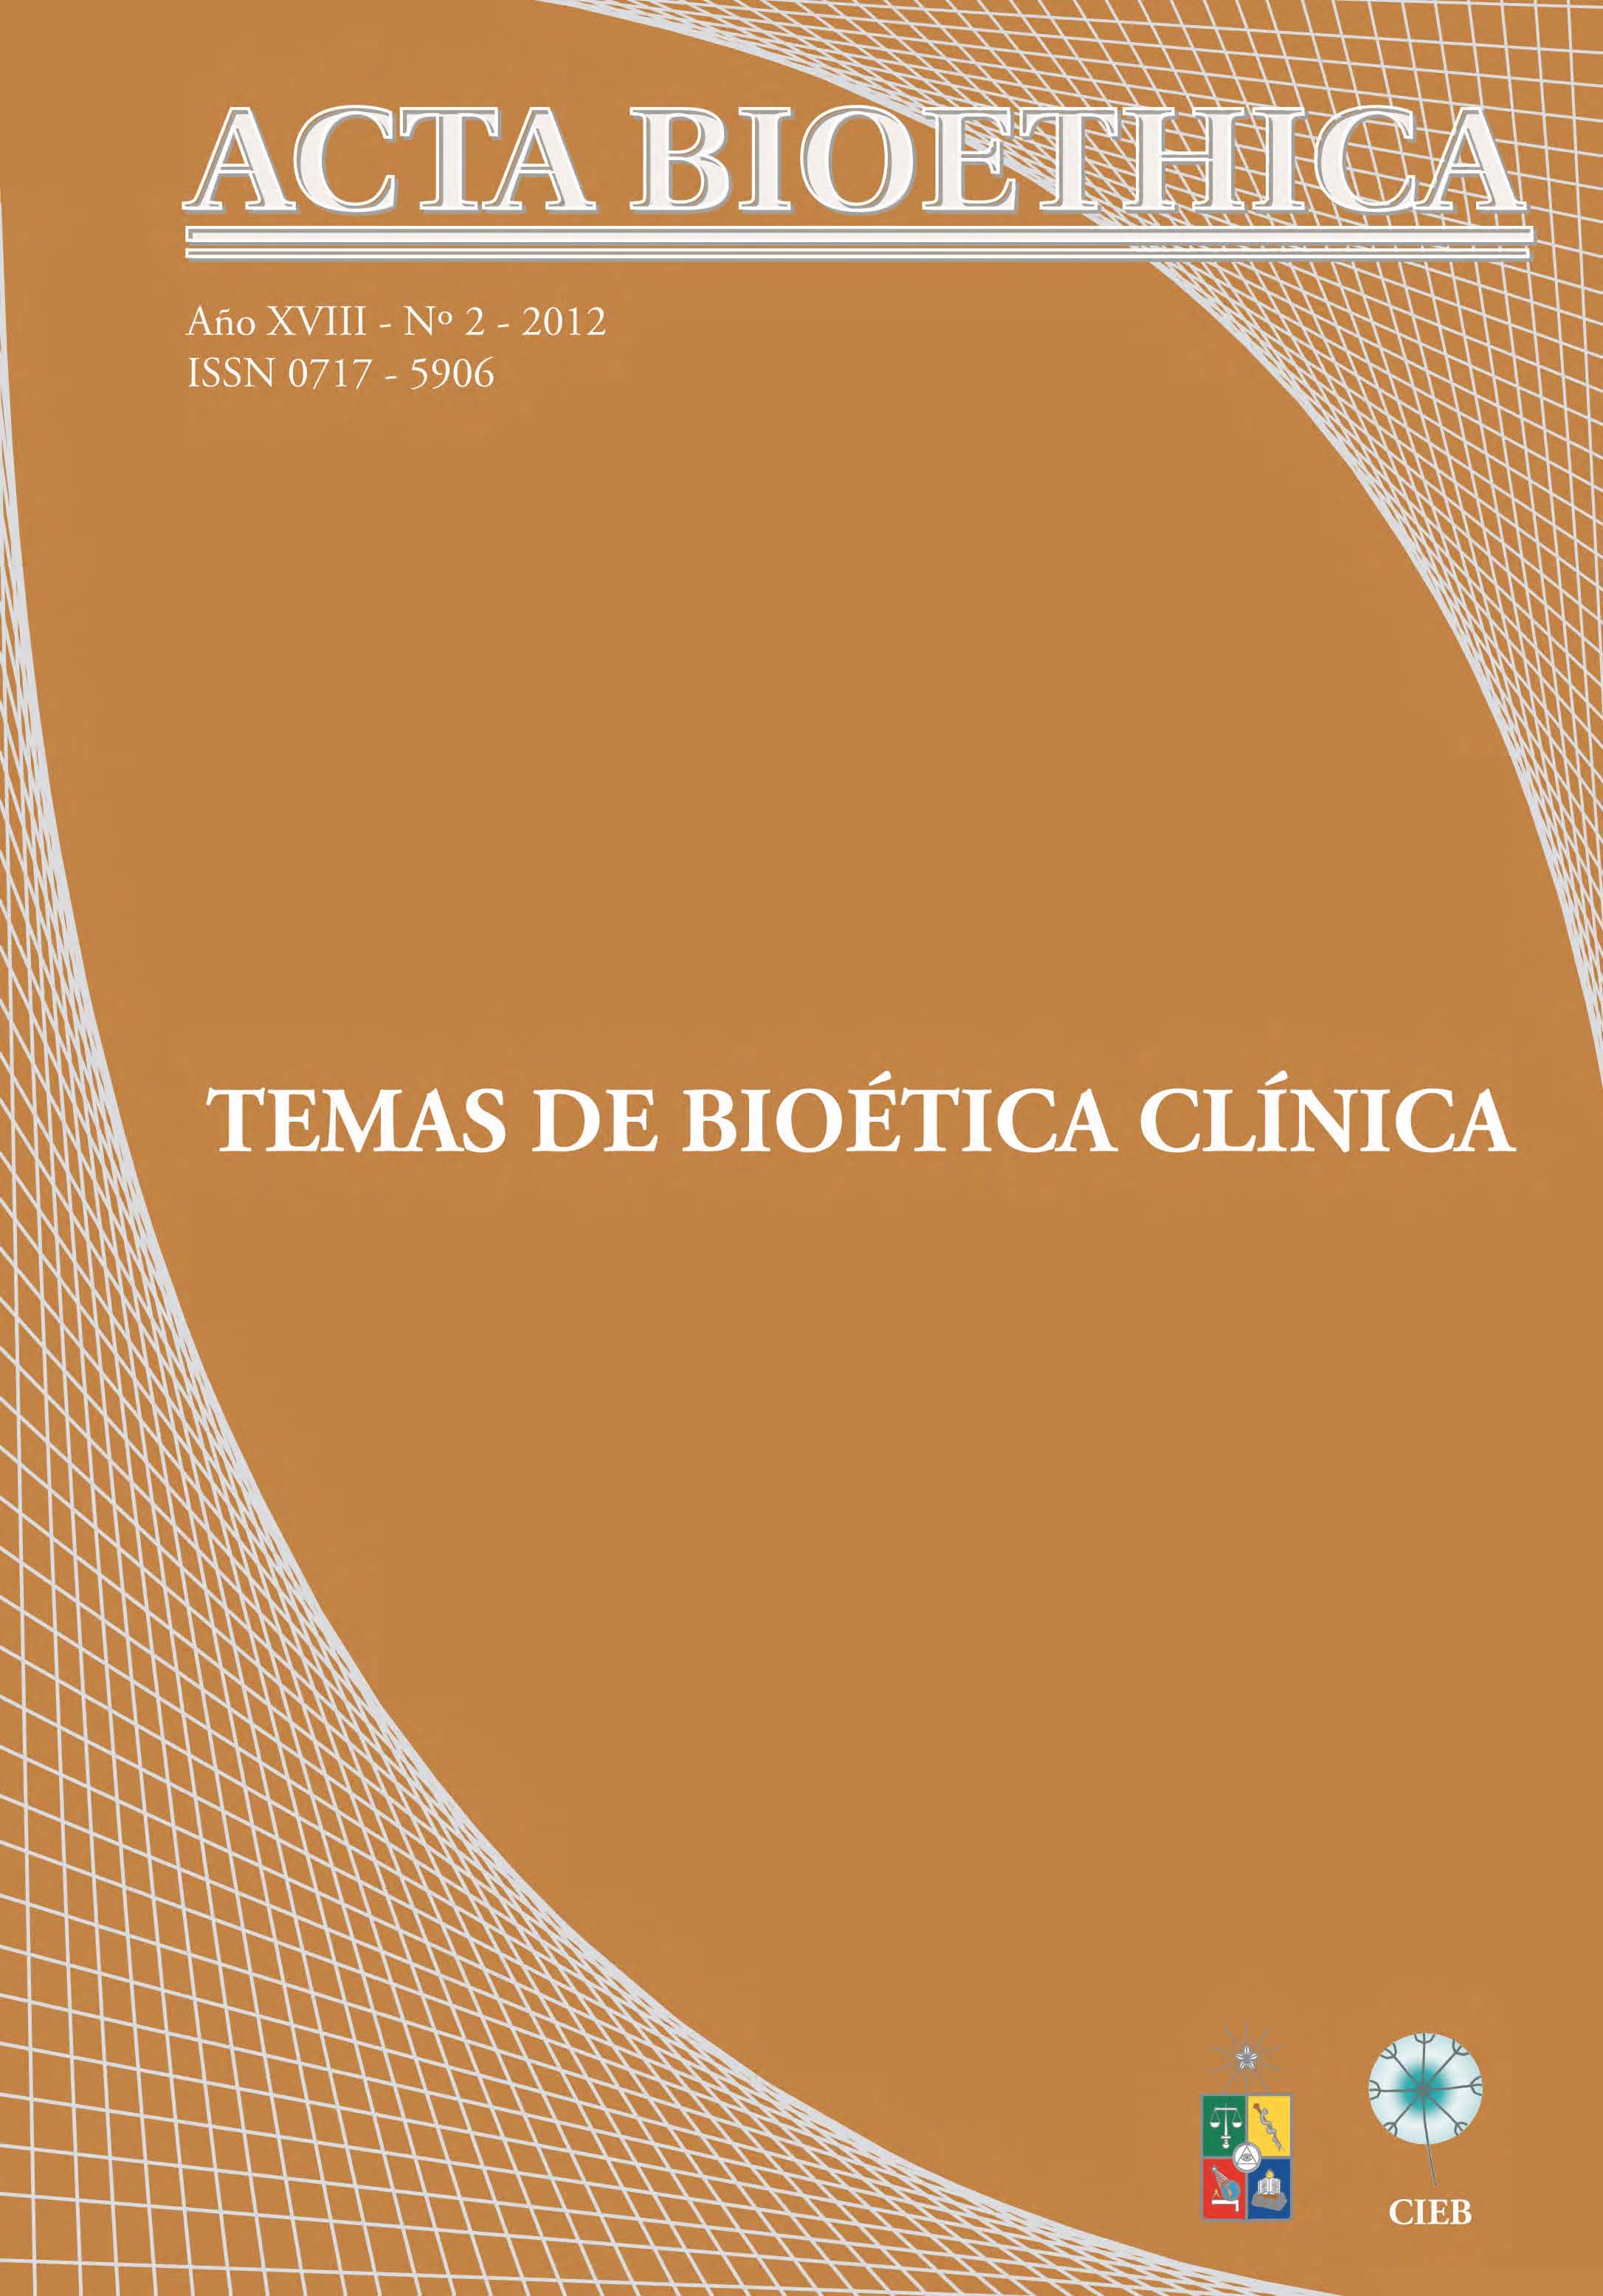 												View Vol. 18 No. 2 (2012): Temas de Bioética Clínica
											